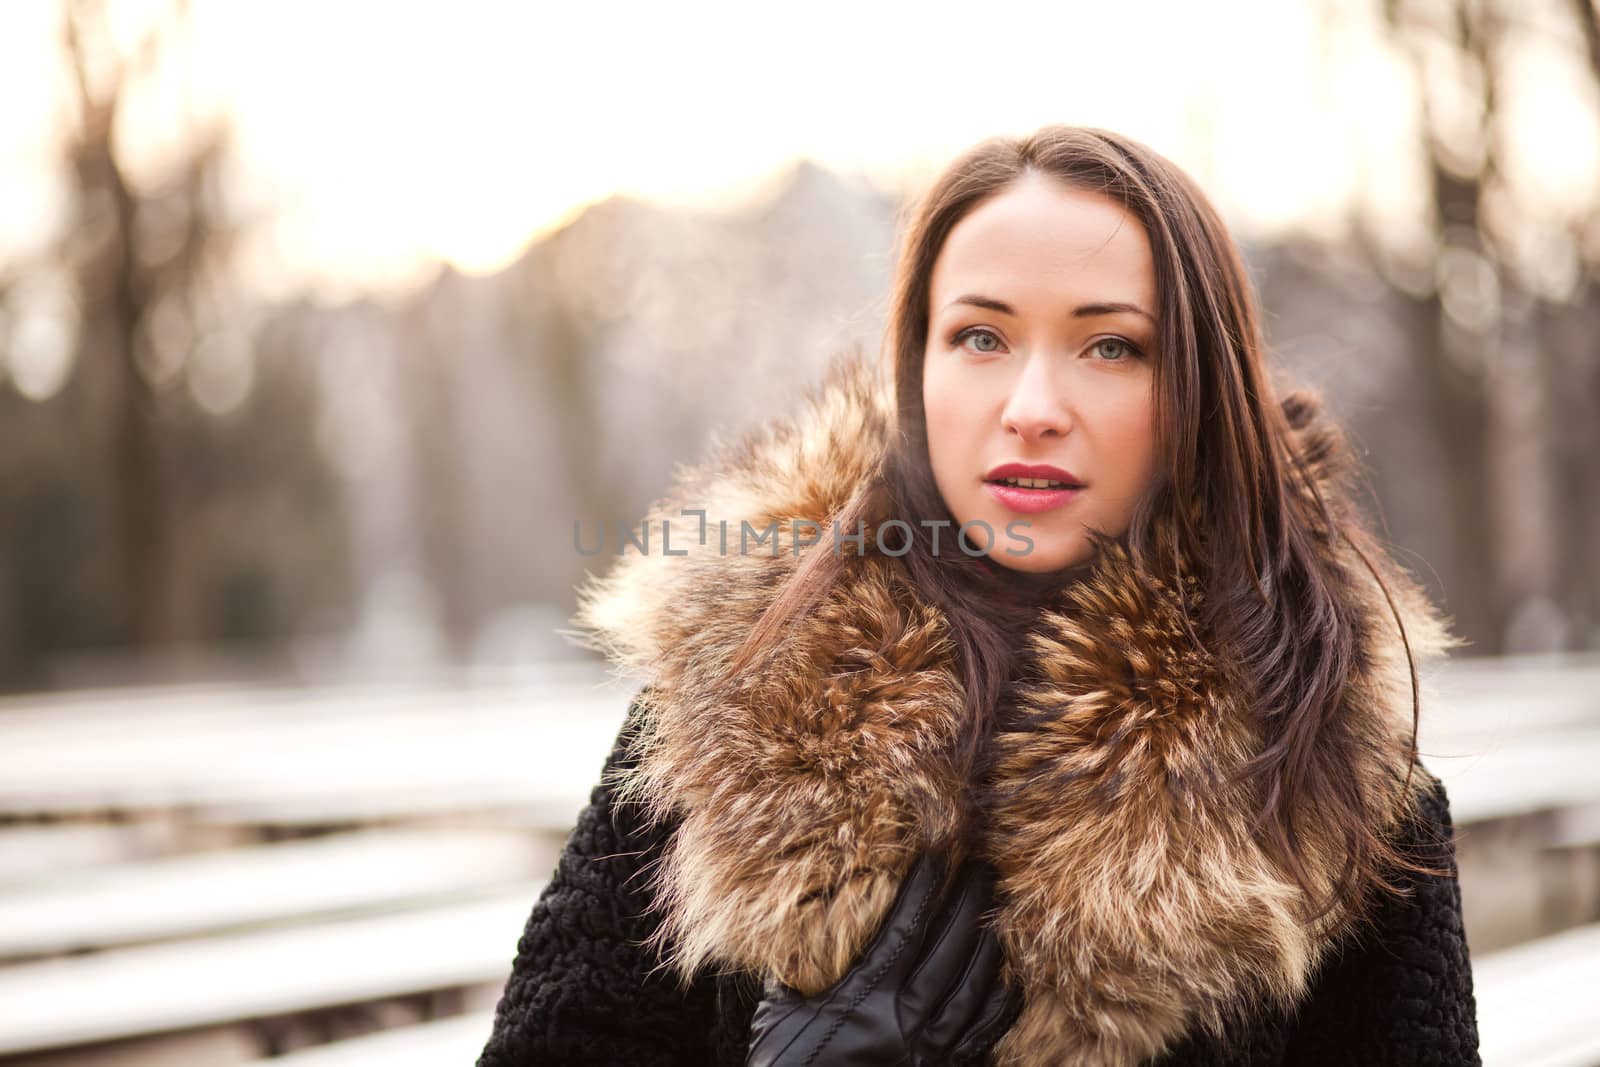 Woman in a fur coat by Kor